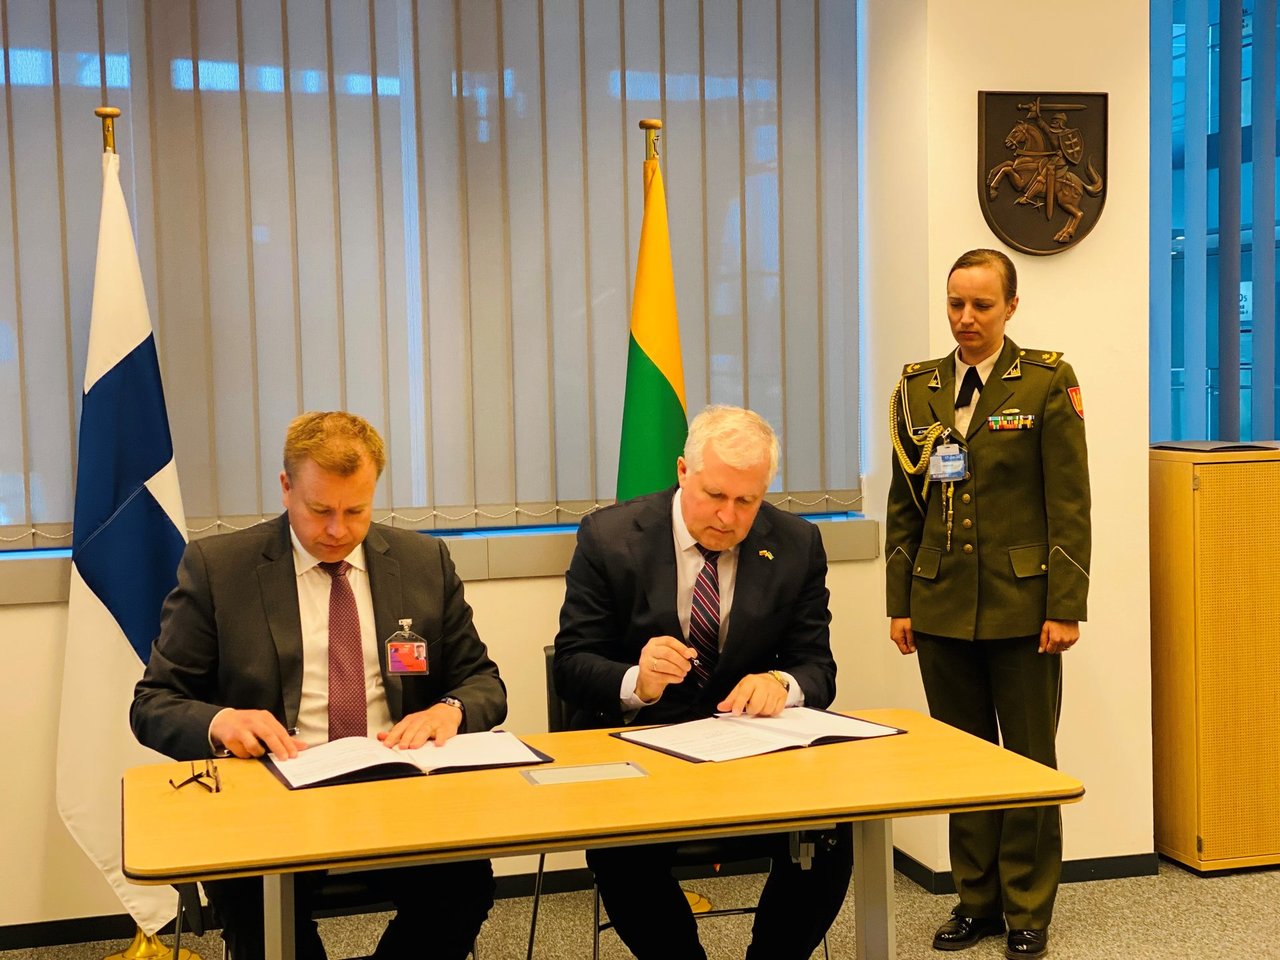 Su Suomija pasirašytas ketinimų susitarimas dėl dviejų patrulinių laivų įsigijimo